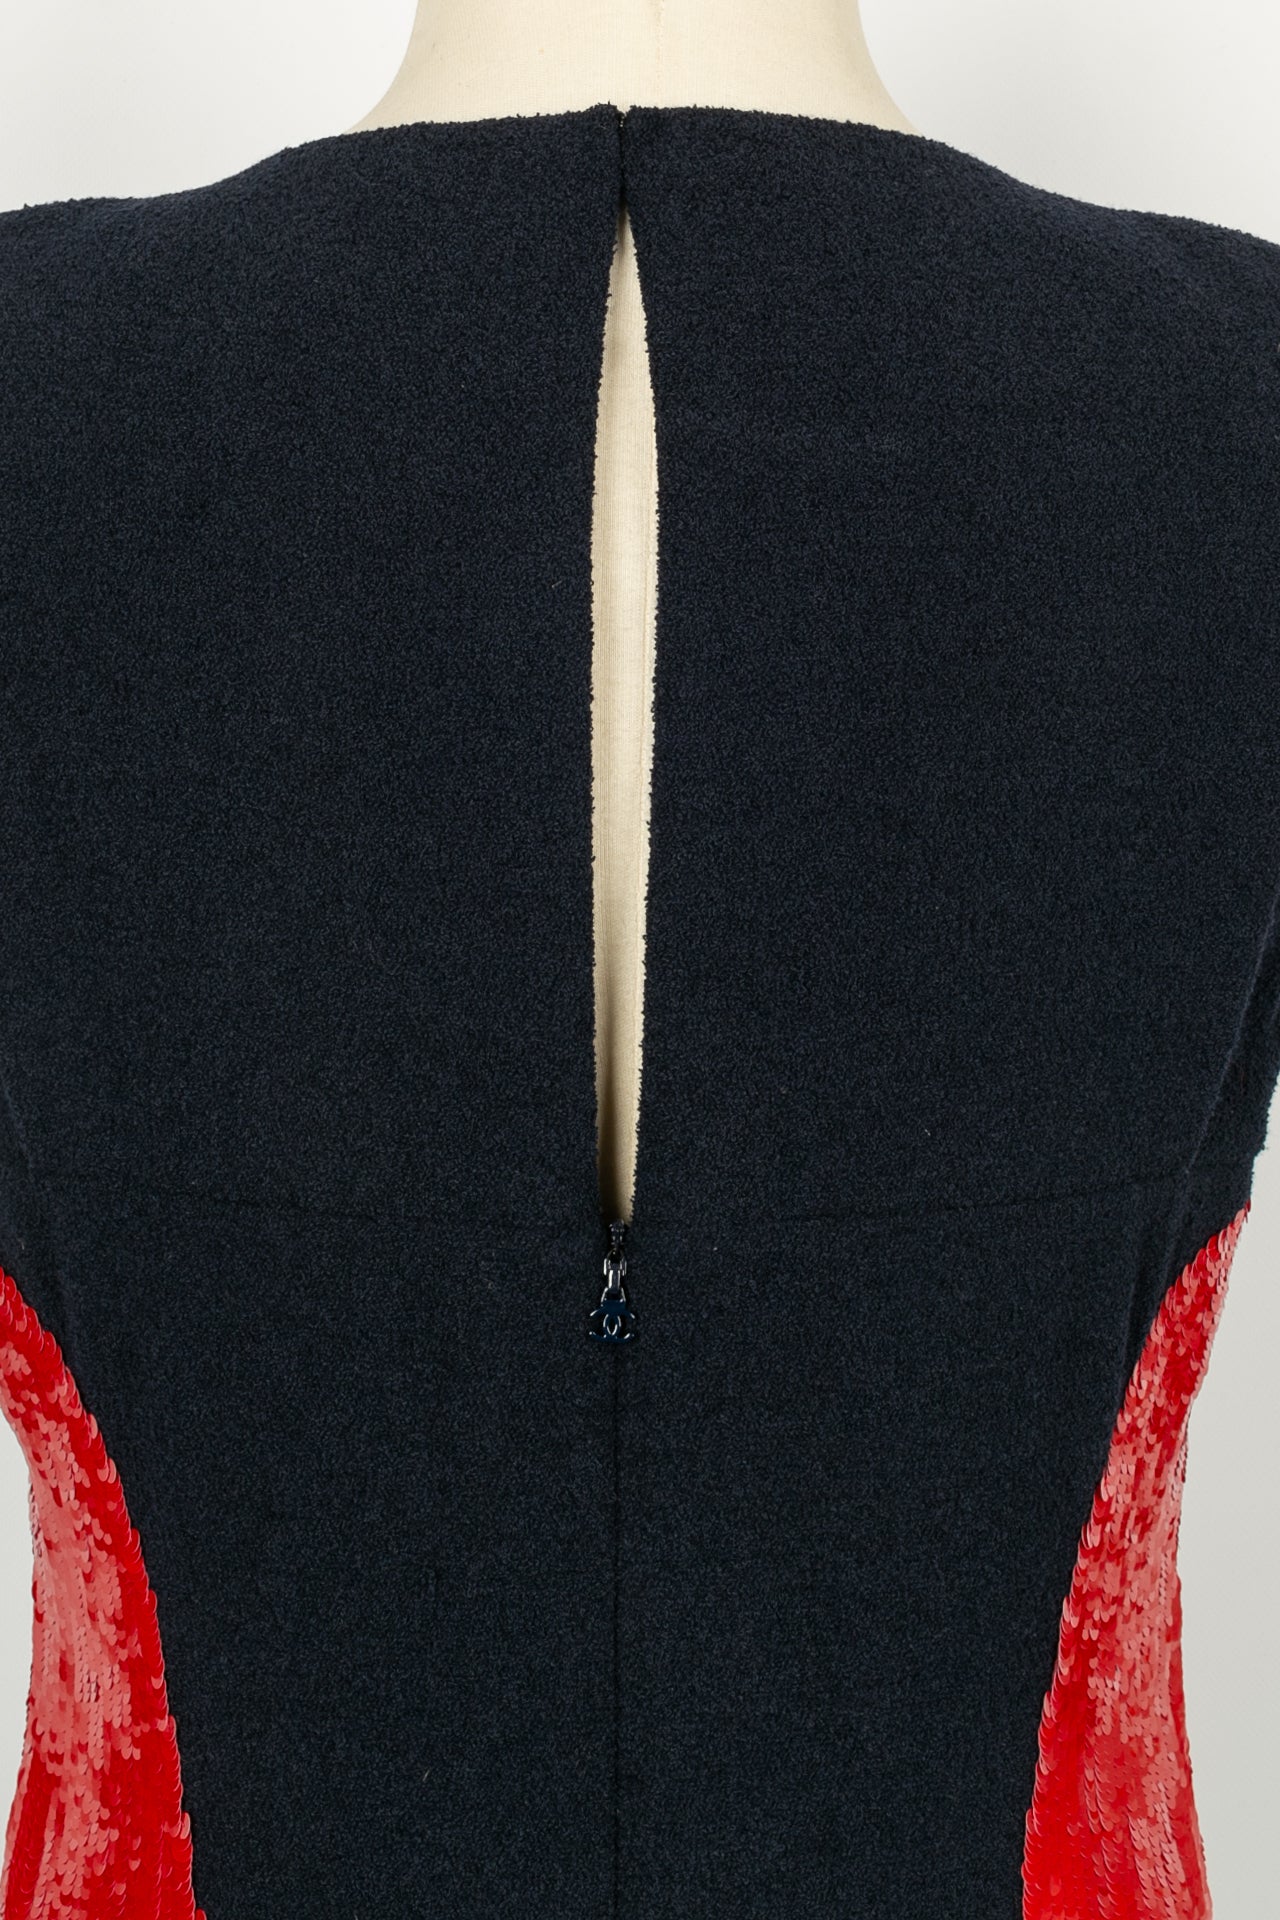 Robe Chanel Printemps 2008